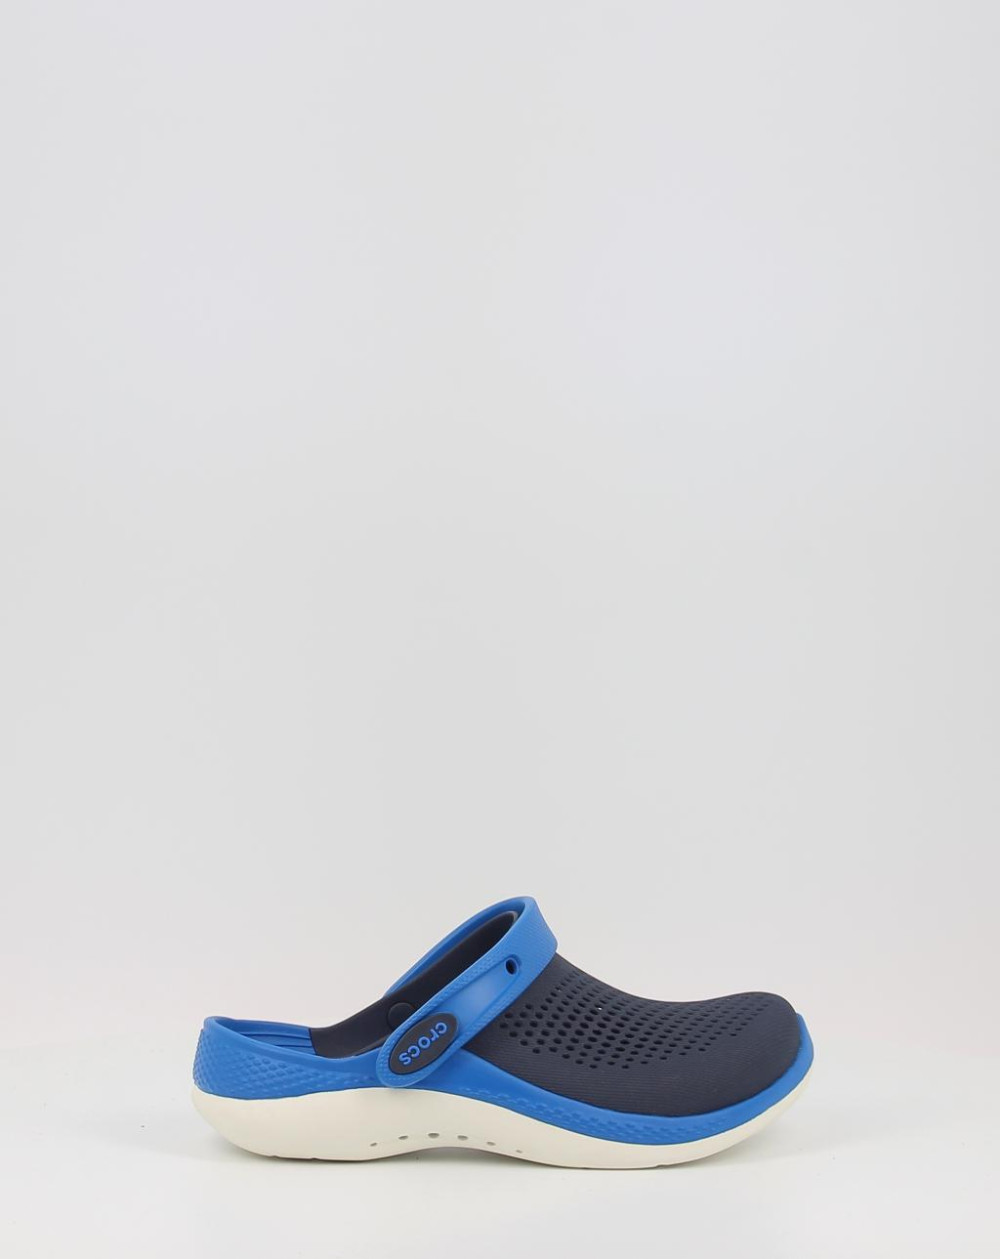 Zuecos Crocs LITERIDE 360 CLOG 207021 azul. Zapatos Obi